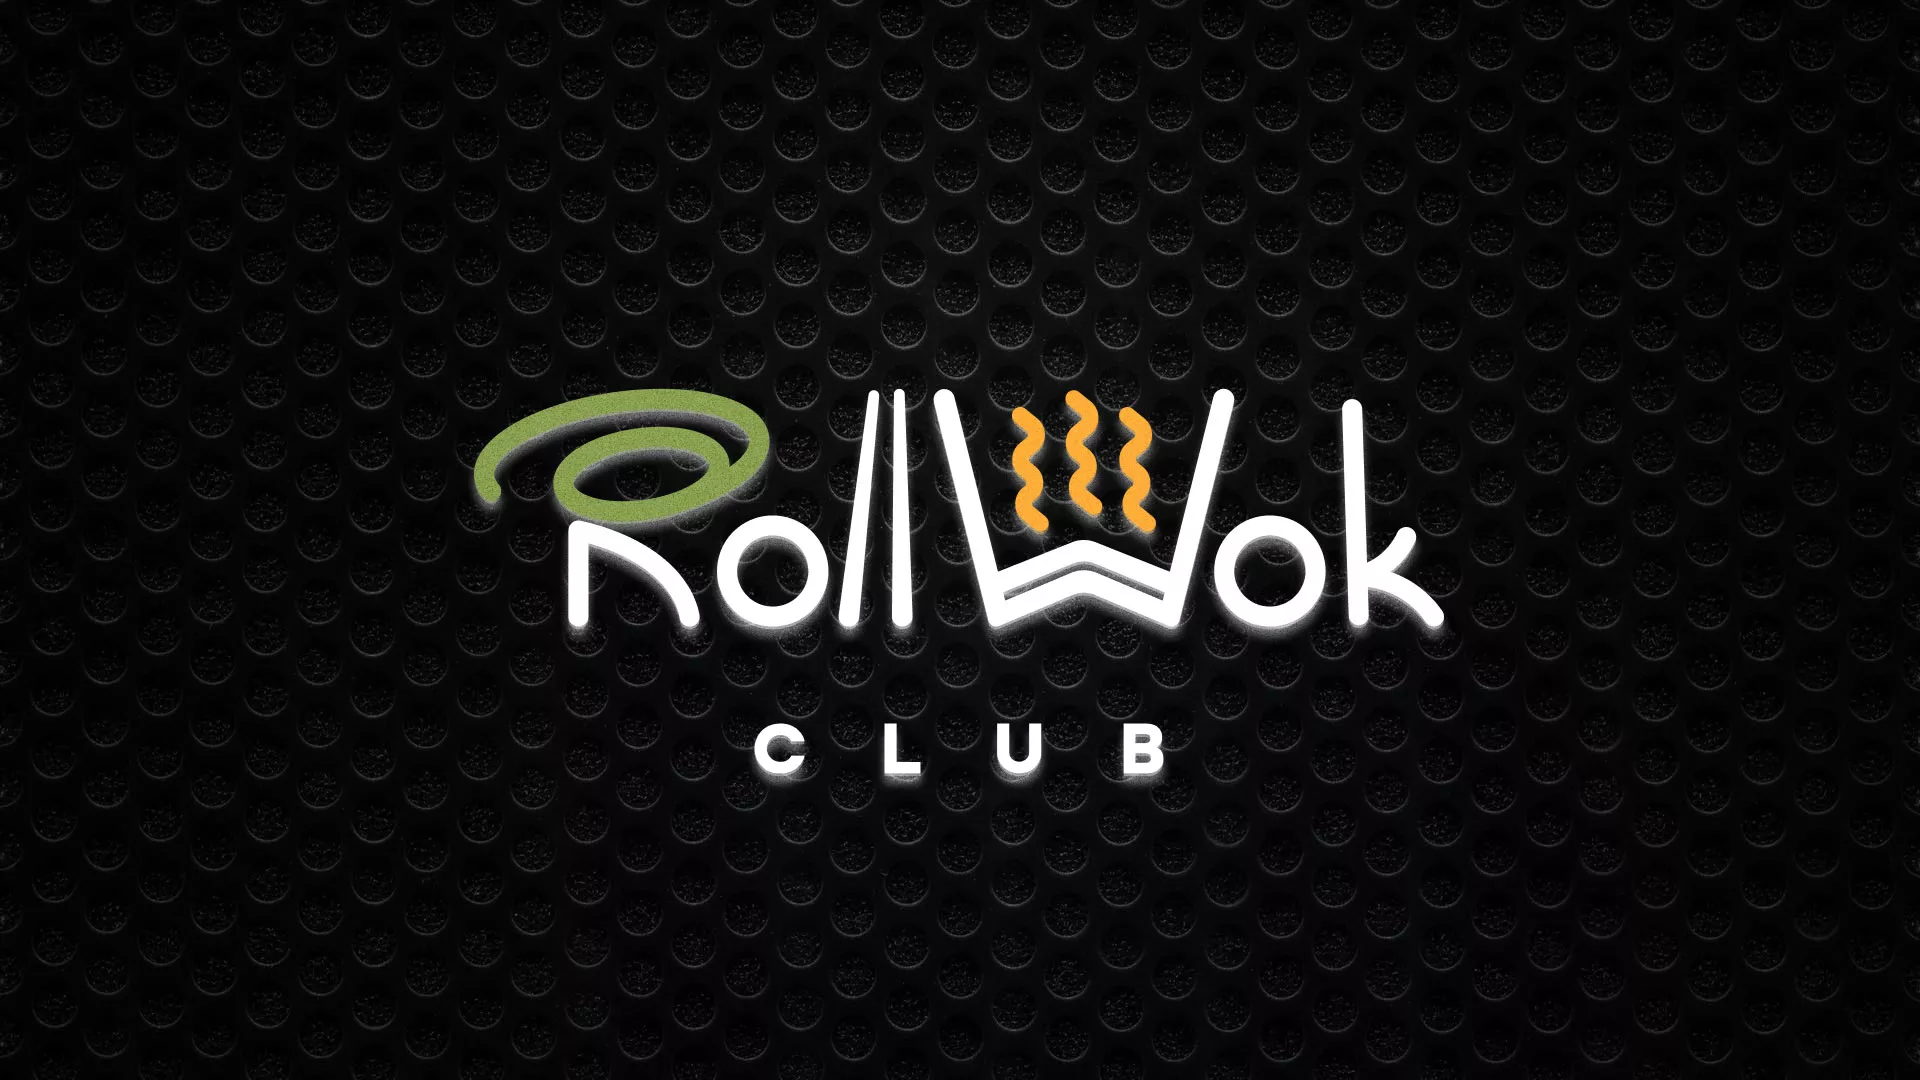 Брендирование торговых точек суши-бара «Roll Wok Club» в Балтийске